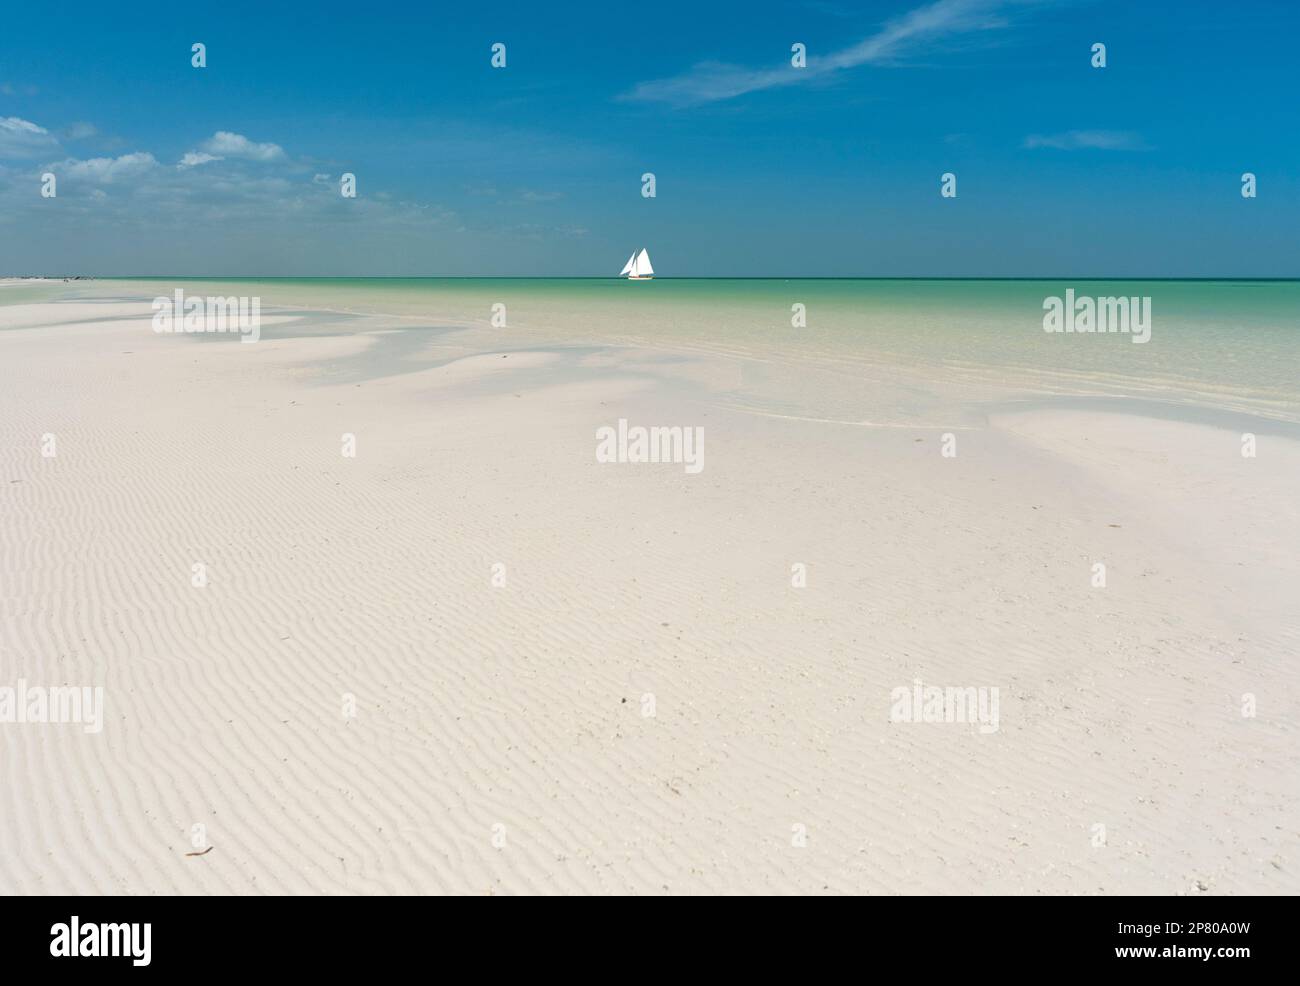 Spiaggia di sabbia bianca su un'isola tropicale con nave a vela all'orizzonte contro il cielo blu Foto Stock